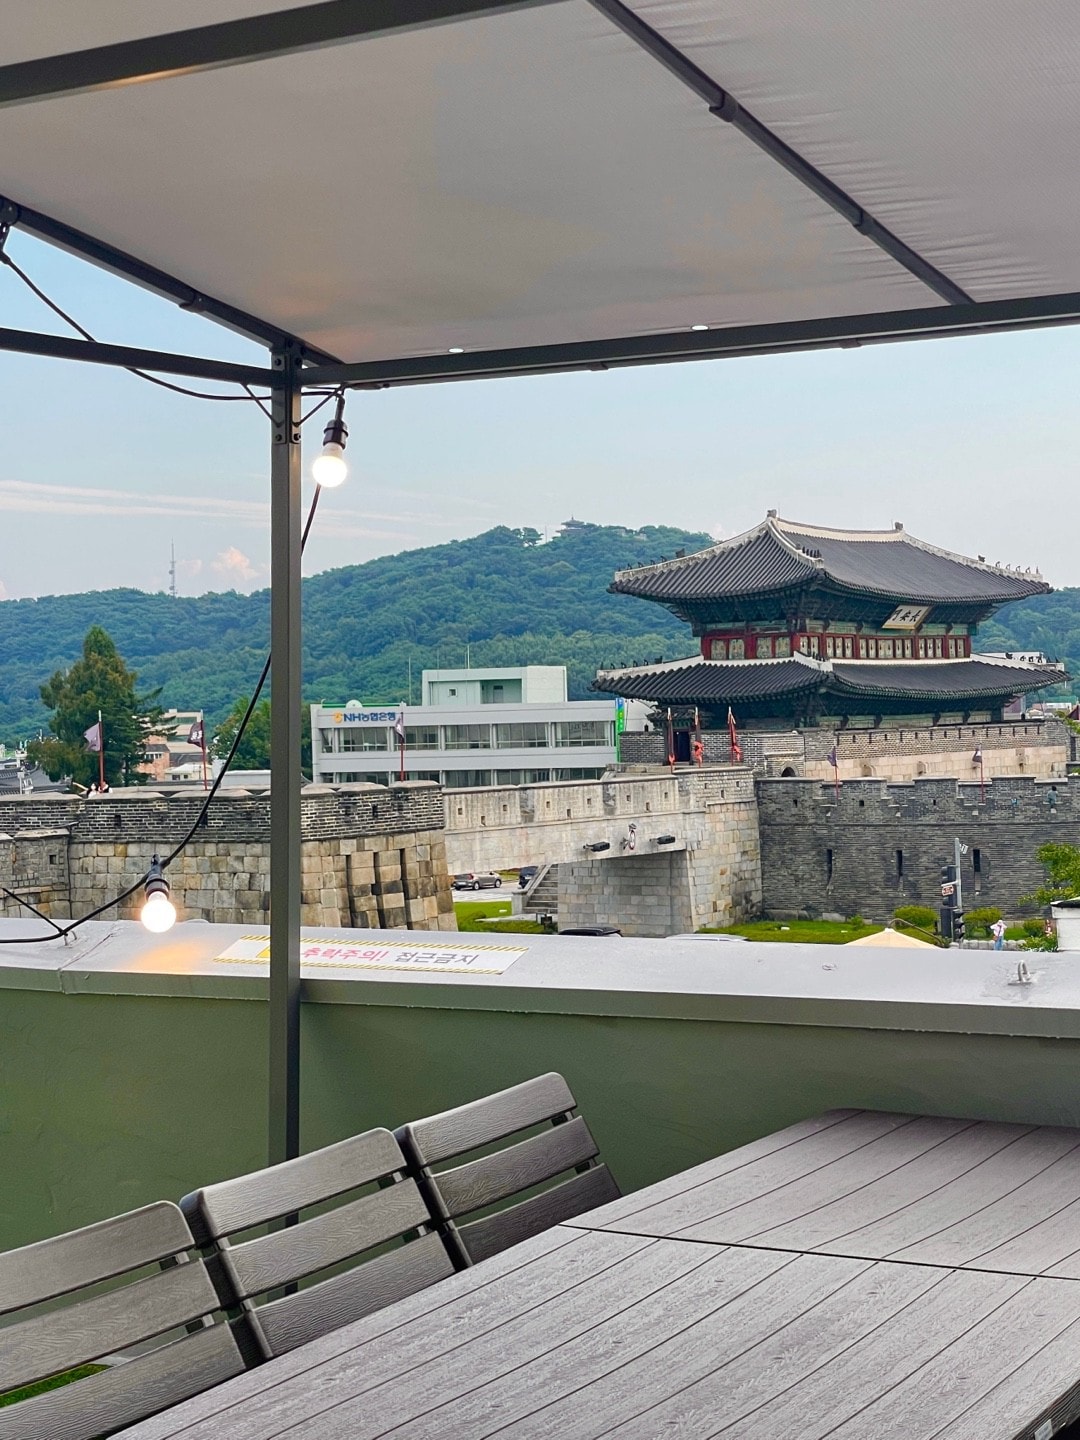 [Hwahong] #屋顶#派对室# Haenggung景观#卡拉OK室#烧烤# 25个座位#宠物